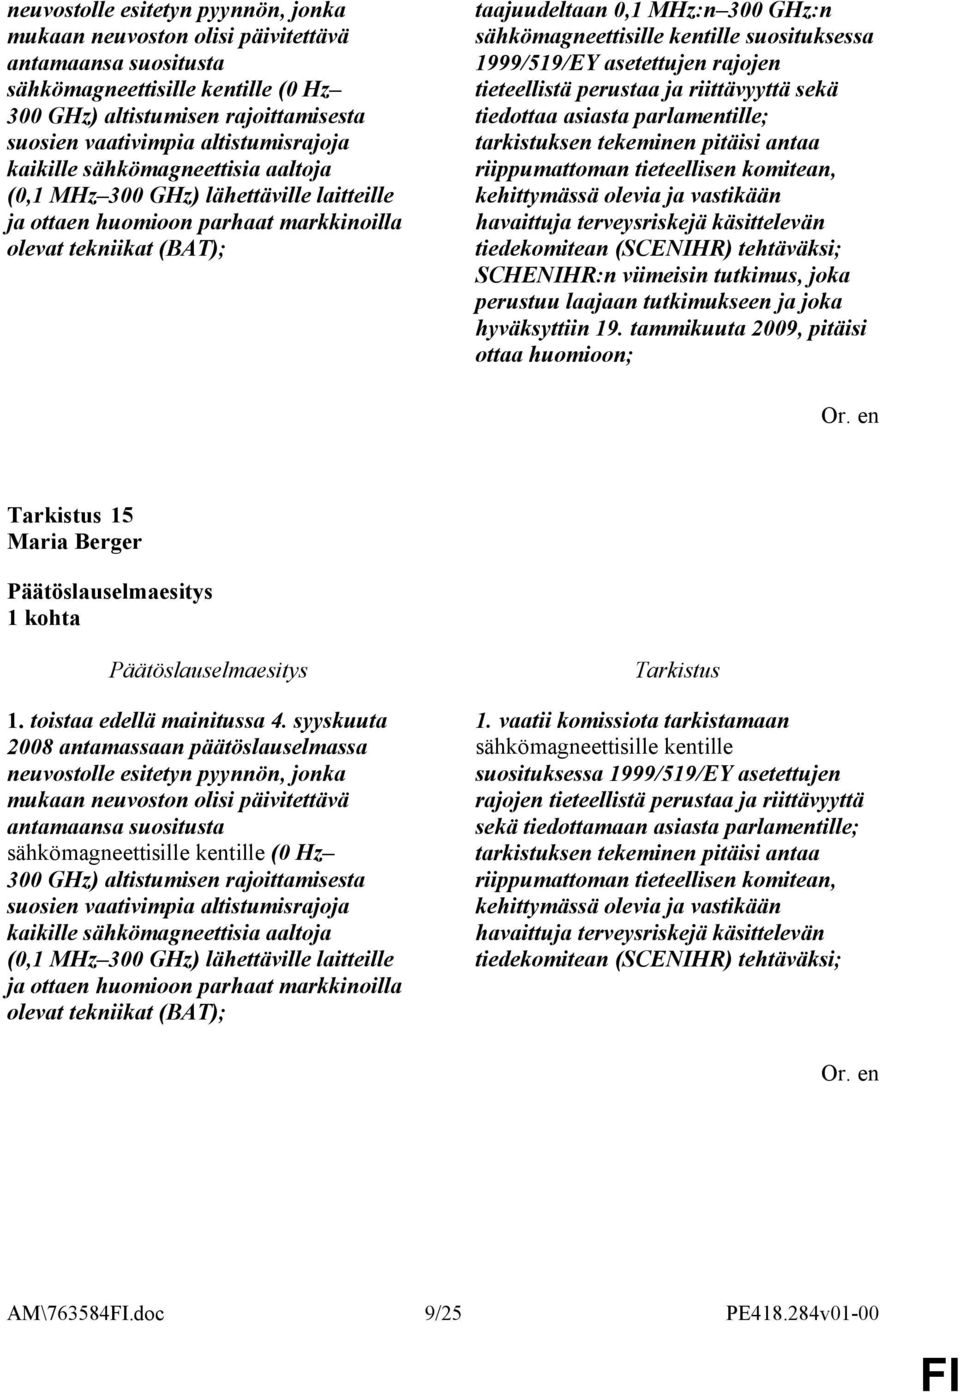 sähkömagneettisille kentille suosituksessa 1999/519/EY asetettujen rajojen tieteellistä perustaa ja riittävyyttä sekä tiedottaa asiasta parlamentille; tarkistuksen tekeminen pitäisi antaa